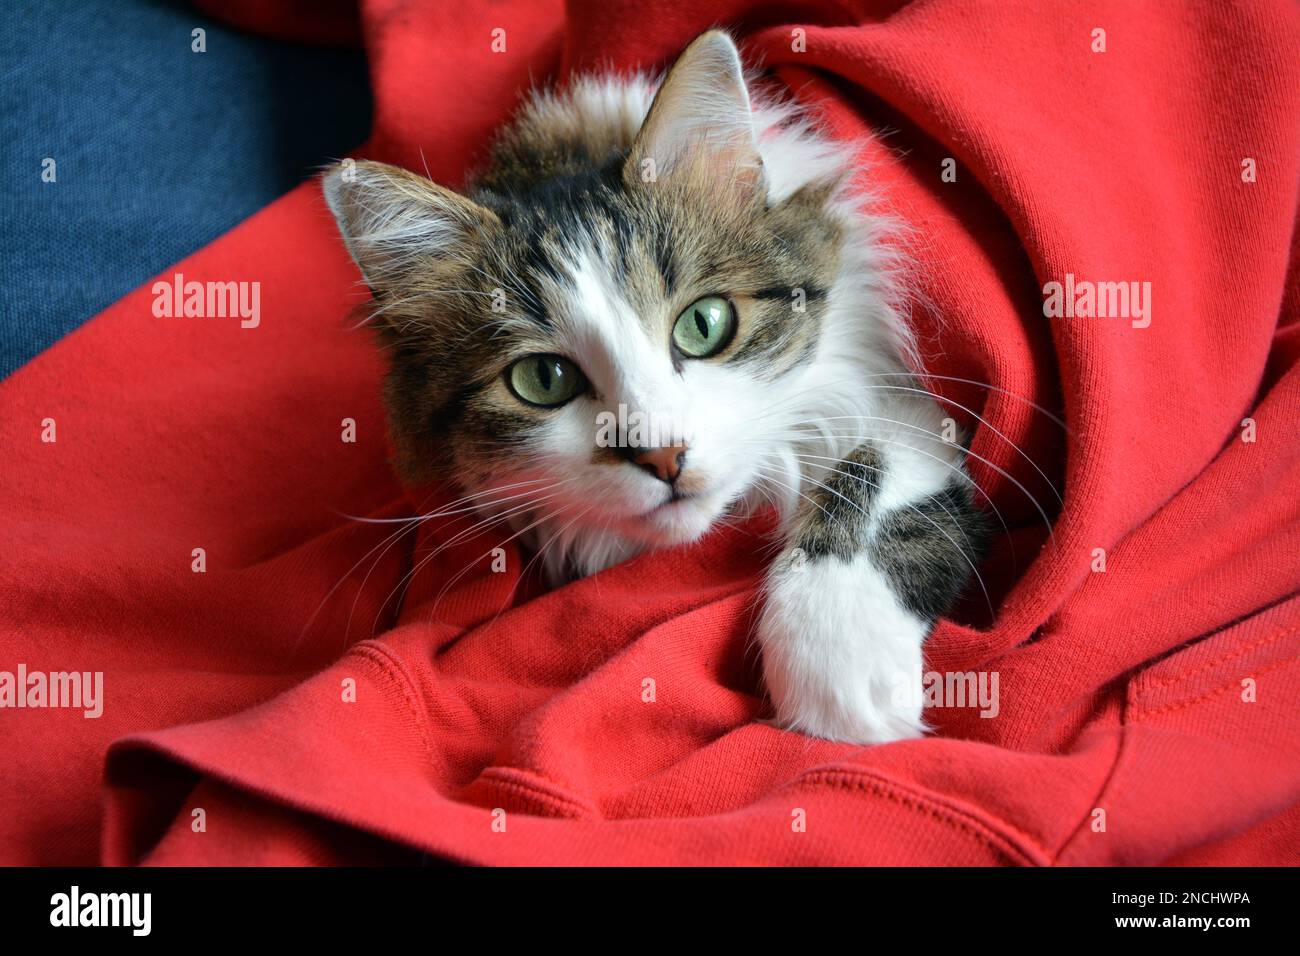 Gros plan d'un joli chat domestique en tabby avec de longues fourrures et des yeux verts enveloppés dans un chandail rouge sur un canapé bleu foncé et regardant l'appareil photo. Banque D'Images